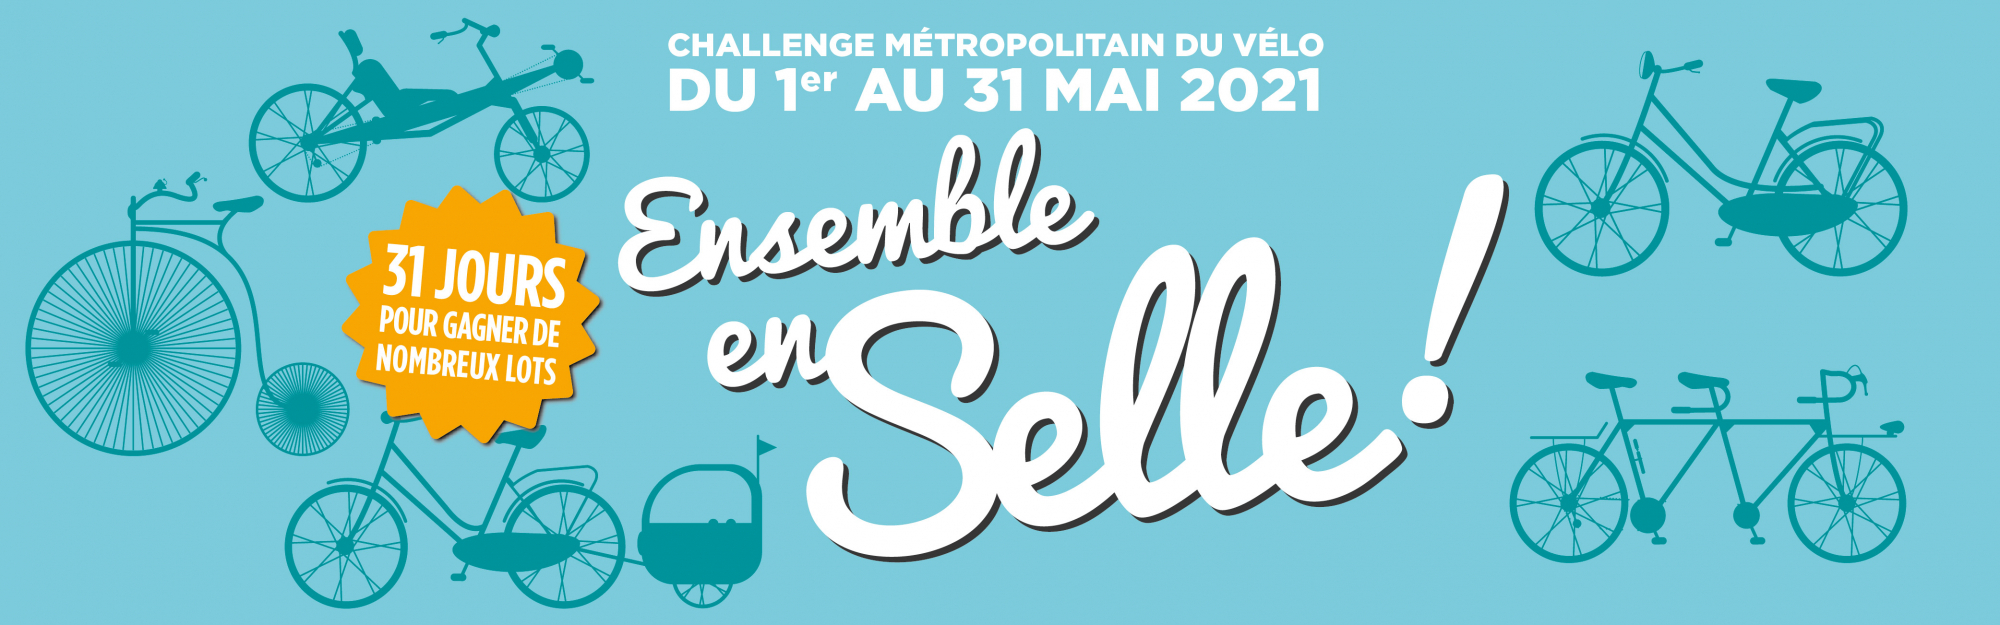 Challenge Métropolitain du Vélo 2021